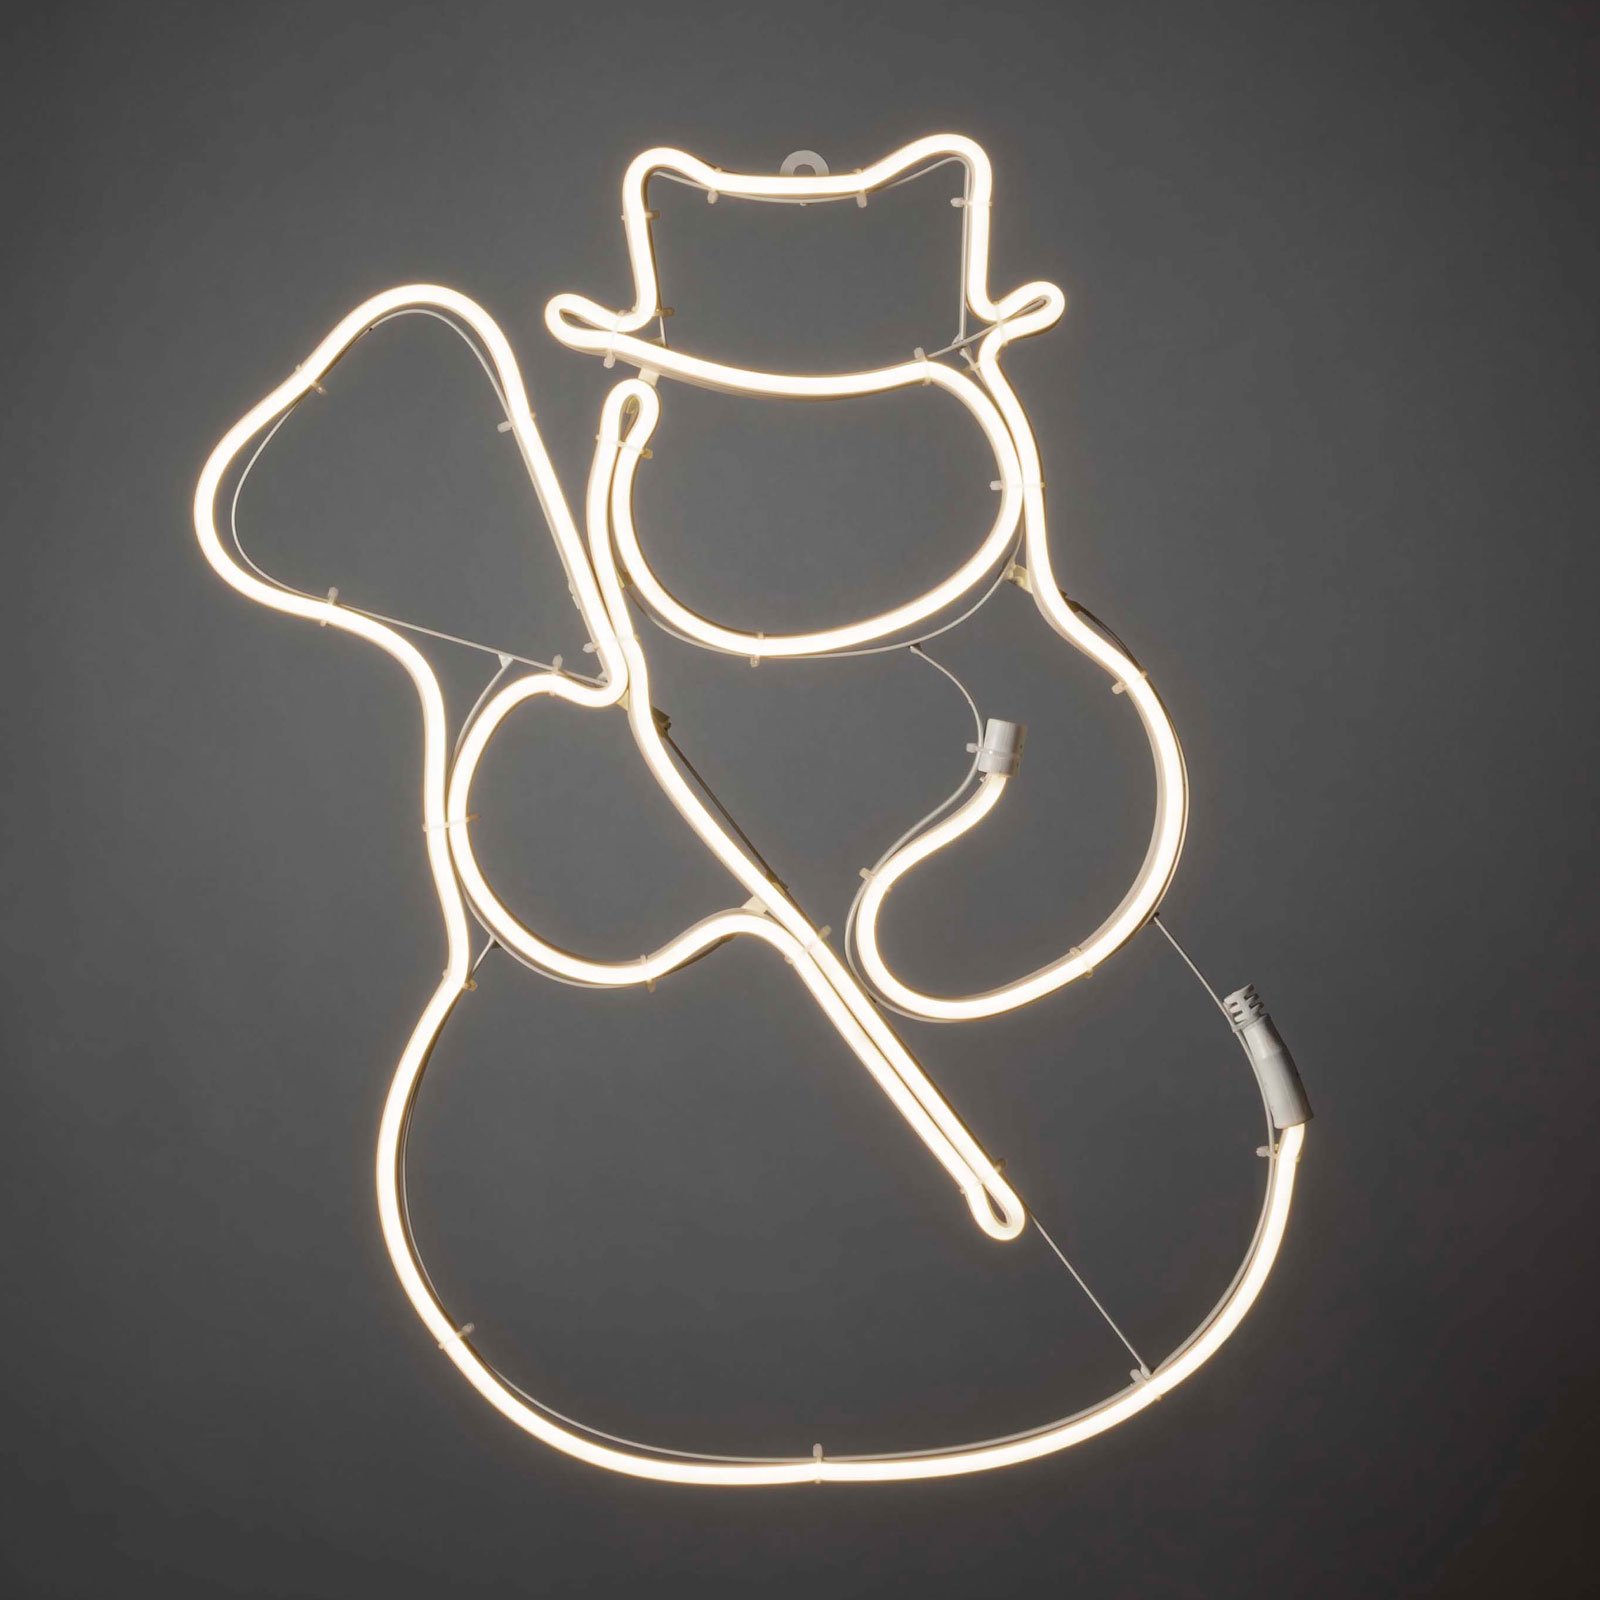 LED venster beeldbuis silhouet sneeuwpop